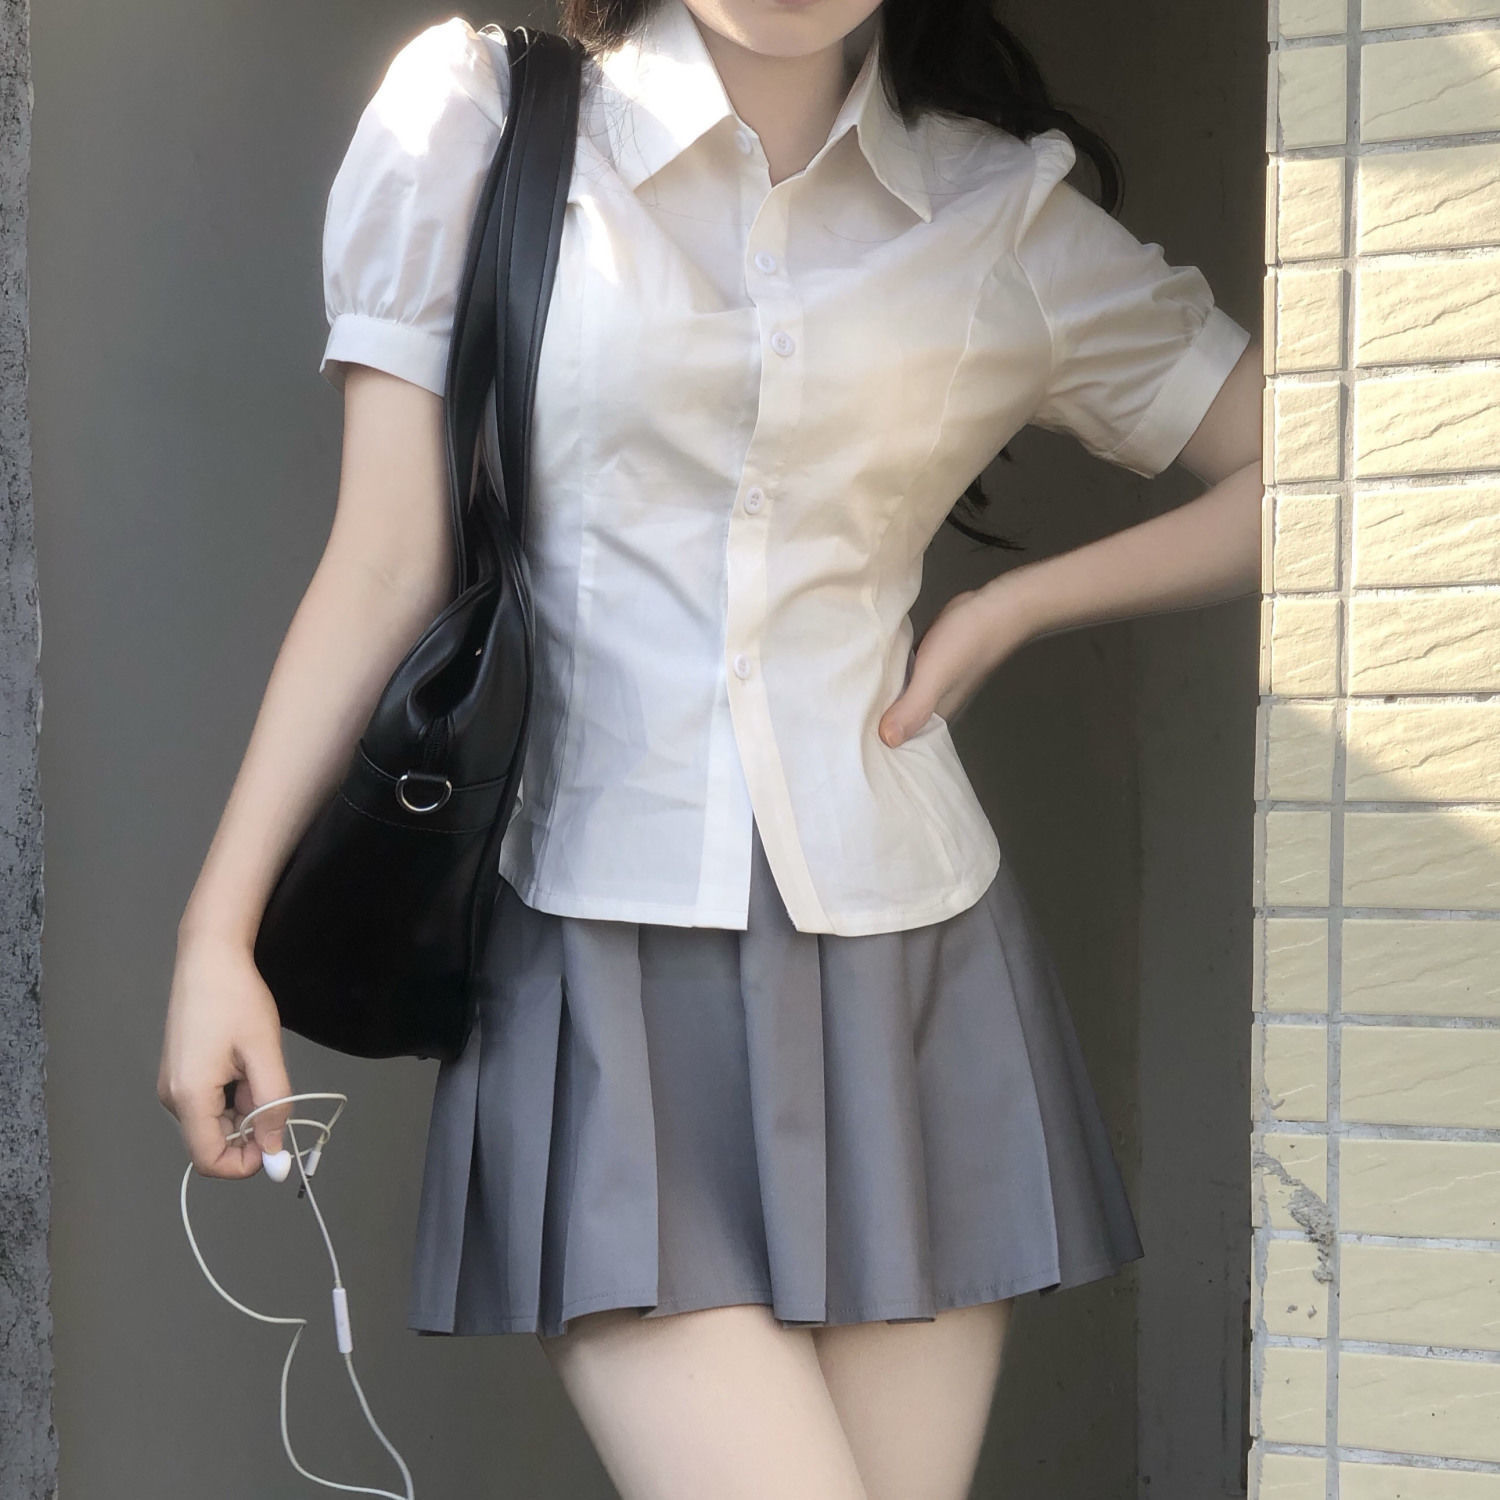  Summer Design Sense Niche JK Uniform Chic Sweet Spicy Top Short Sleeve Japanese Puff Sleeve Pure Desire Shirt Women